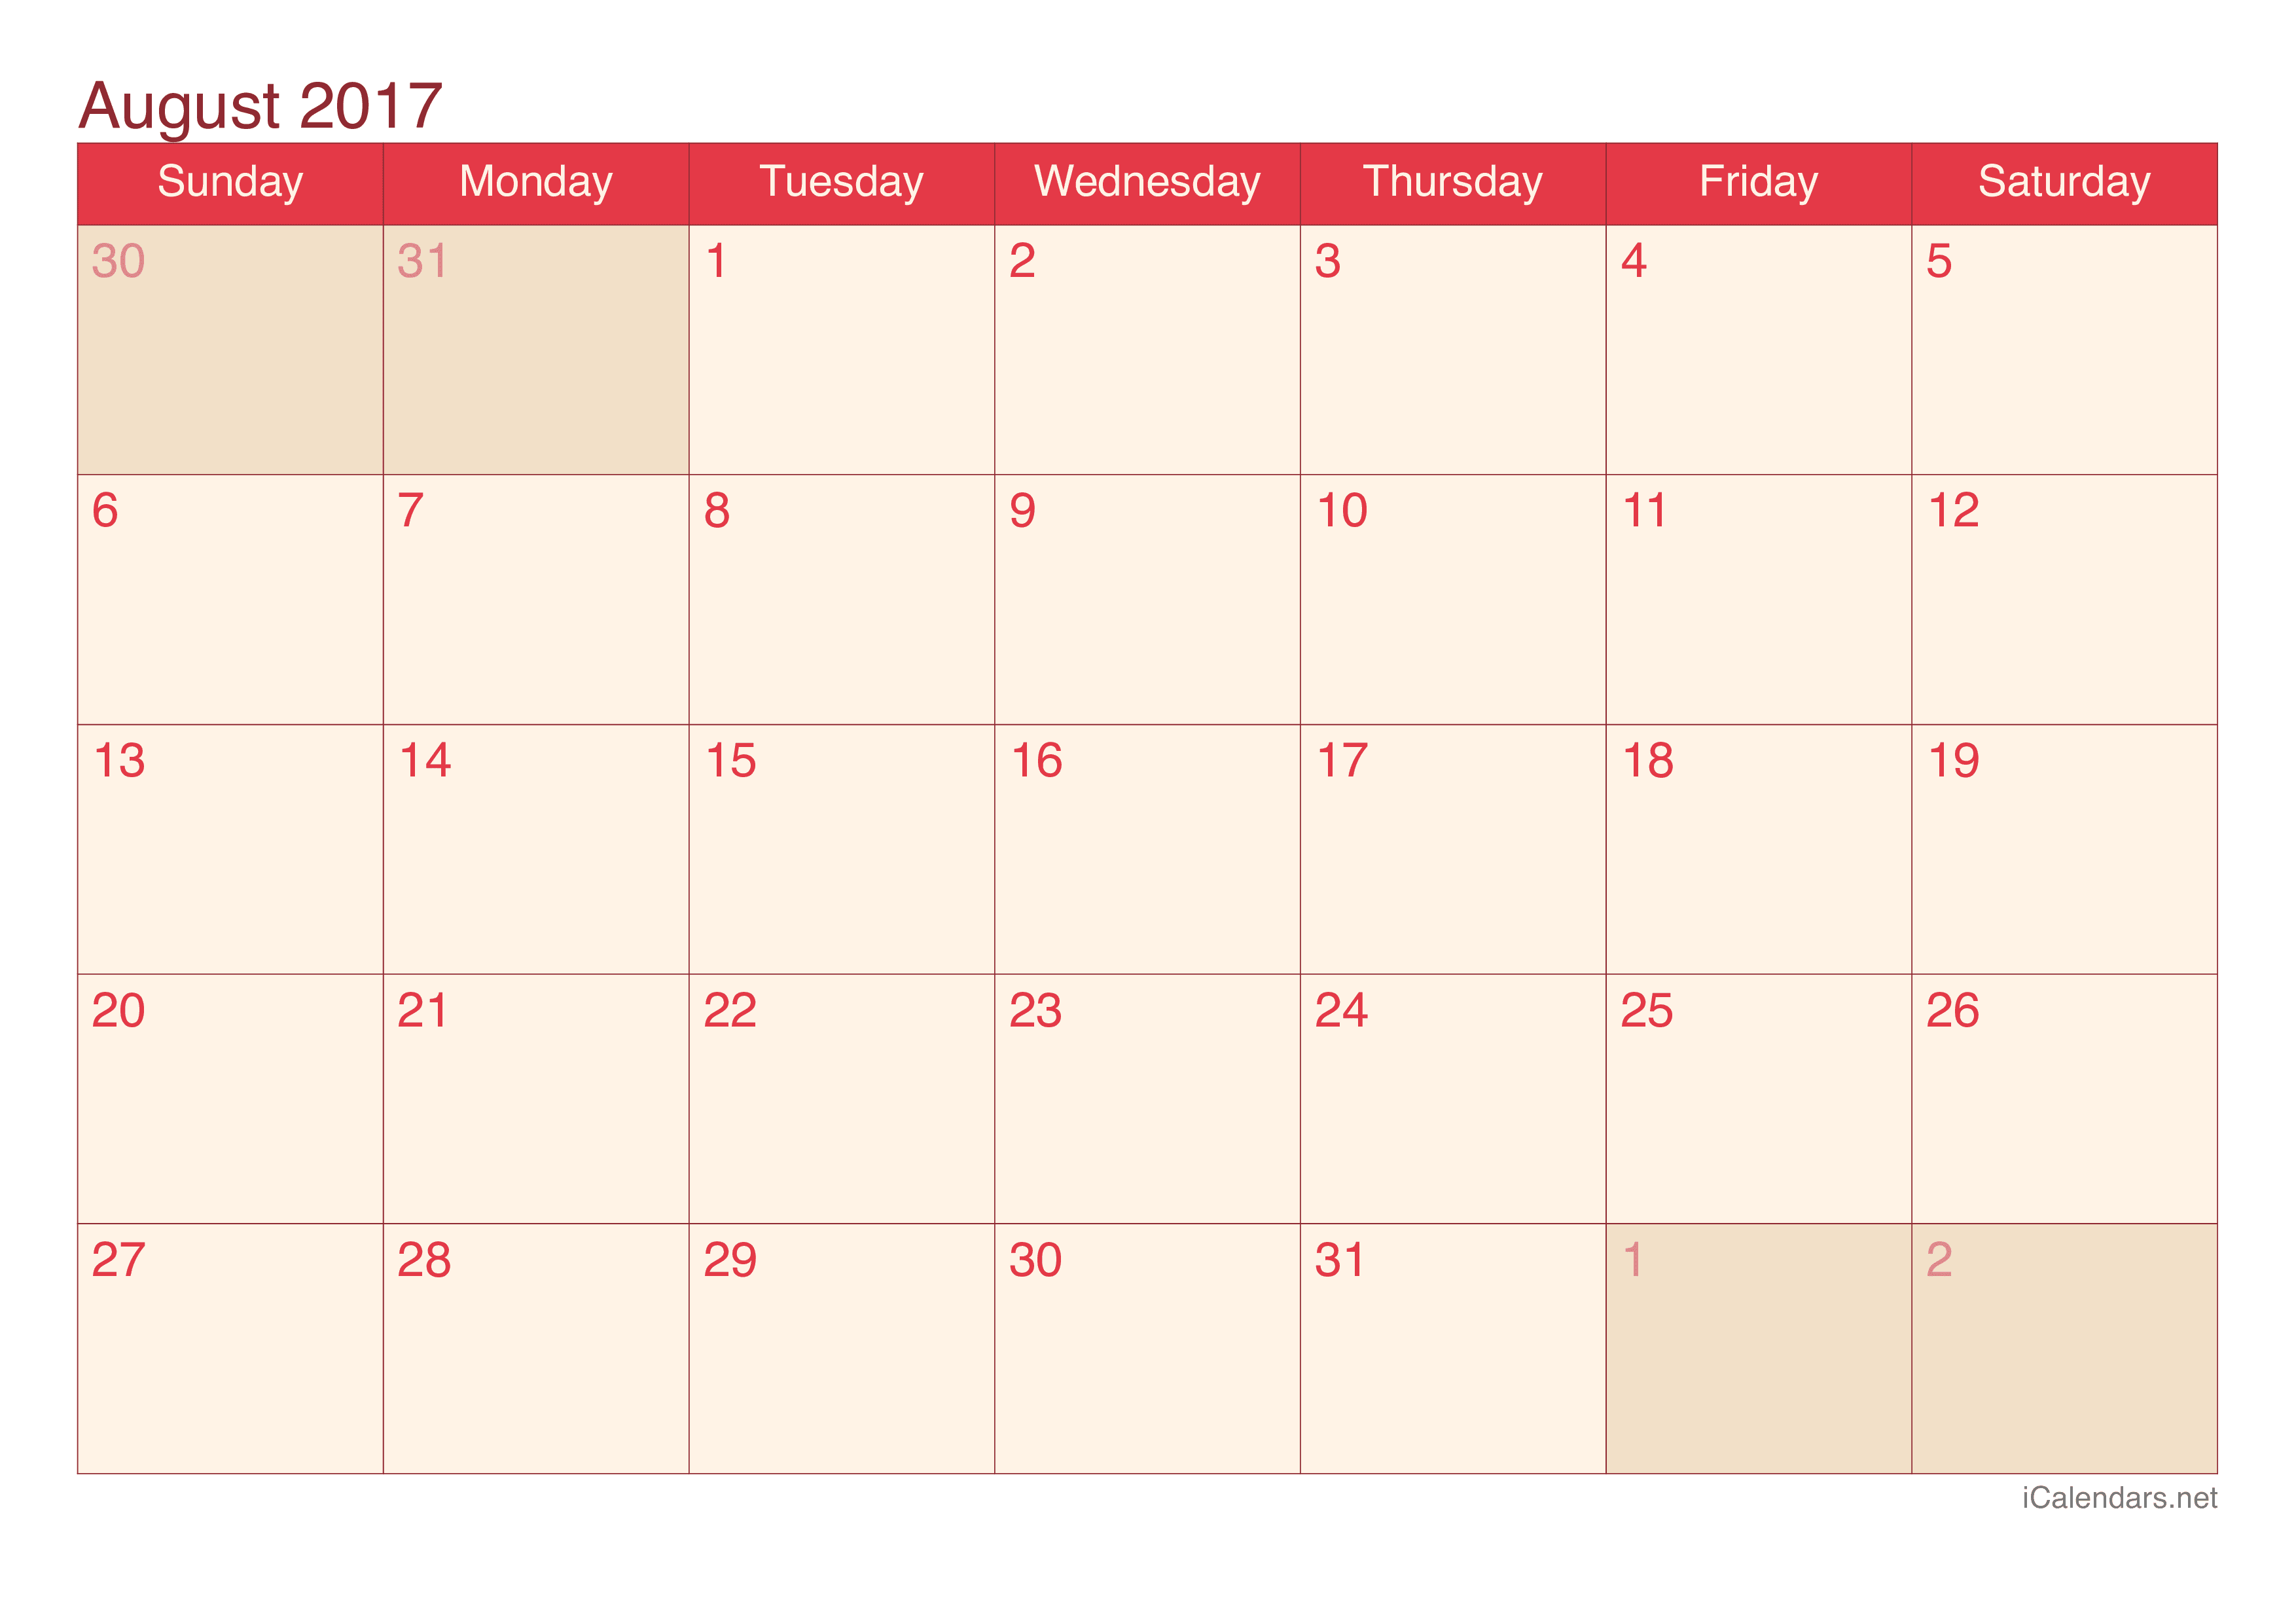 2017 August Calendar - Cherry